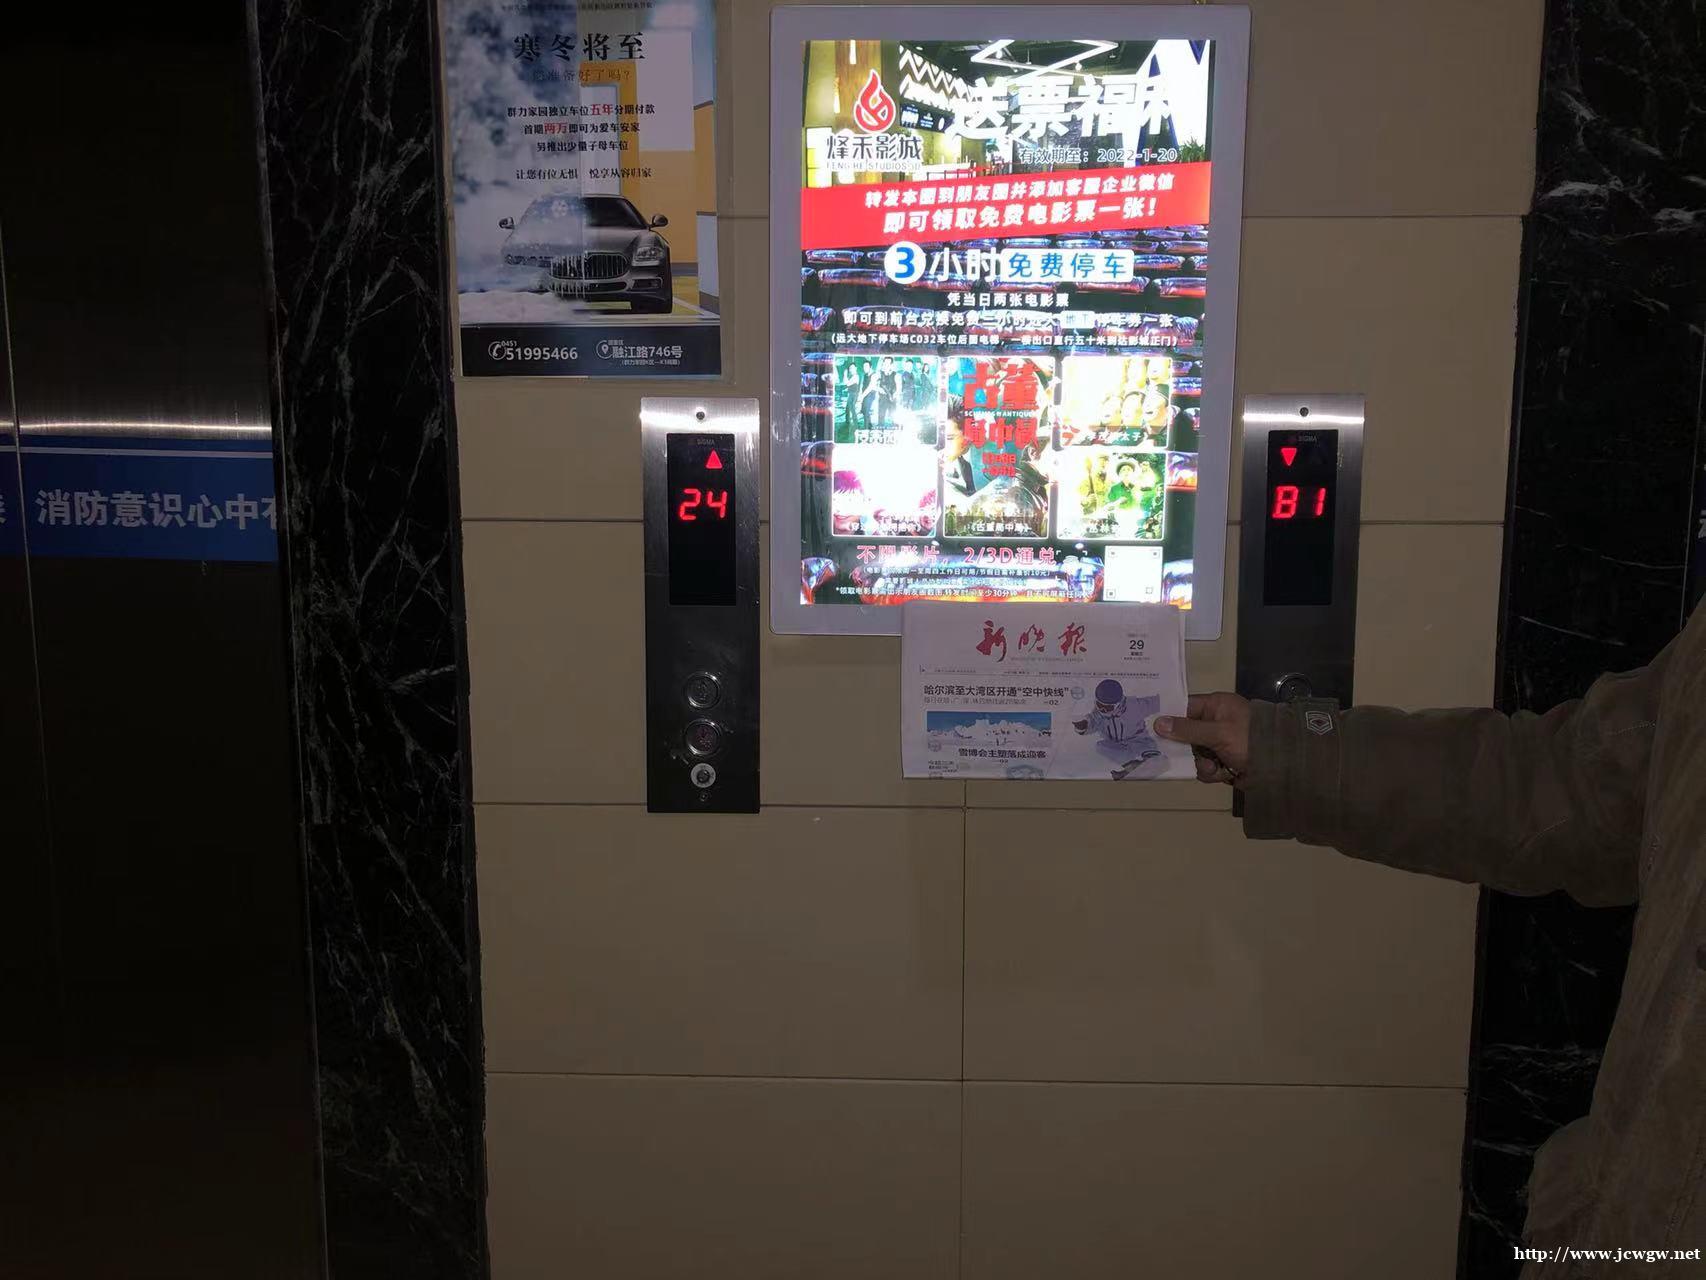 哈尔滨电梯框架广告-高端社区水晶声控灯箱万卓文化